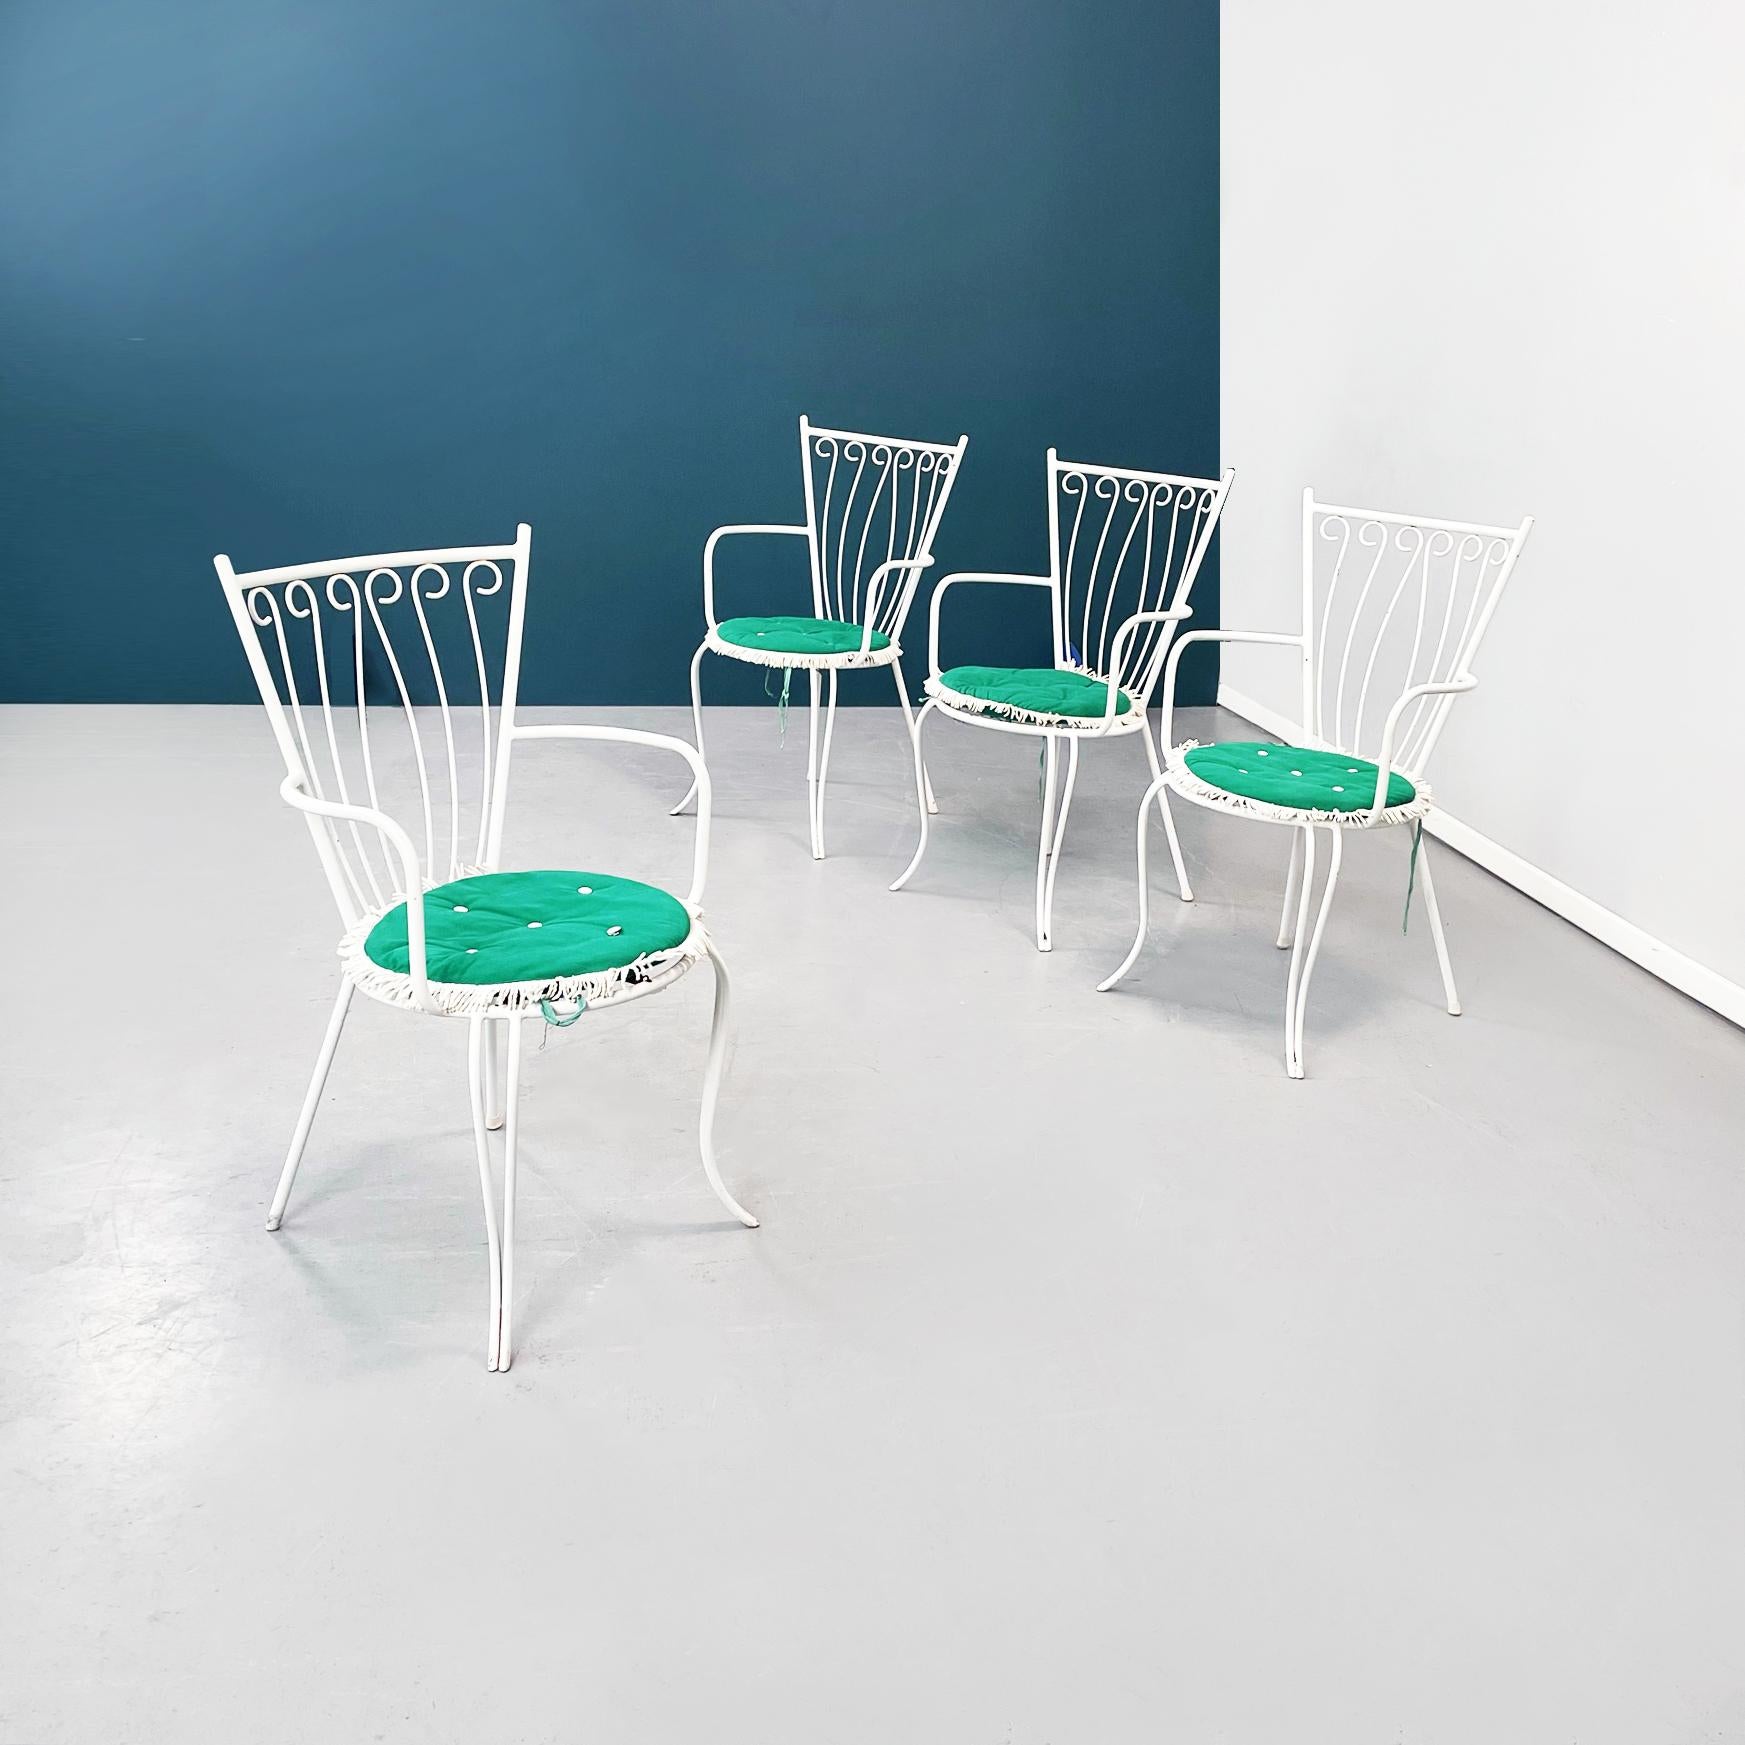 Chaises de jardin italiennes du milieu du siècle, table en fer blanc, verre et tissu, années 1960.
Salon de jardin composé de 4 chaises et d'une table. Les chaises d'extérieur sont en fer forgé peint en blanc. L'assise ronde est constituée d'une